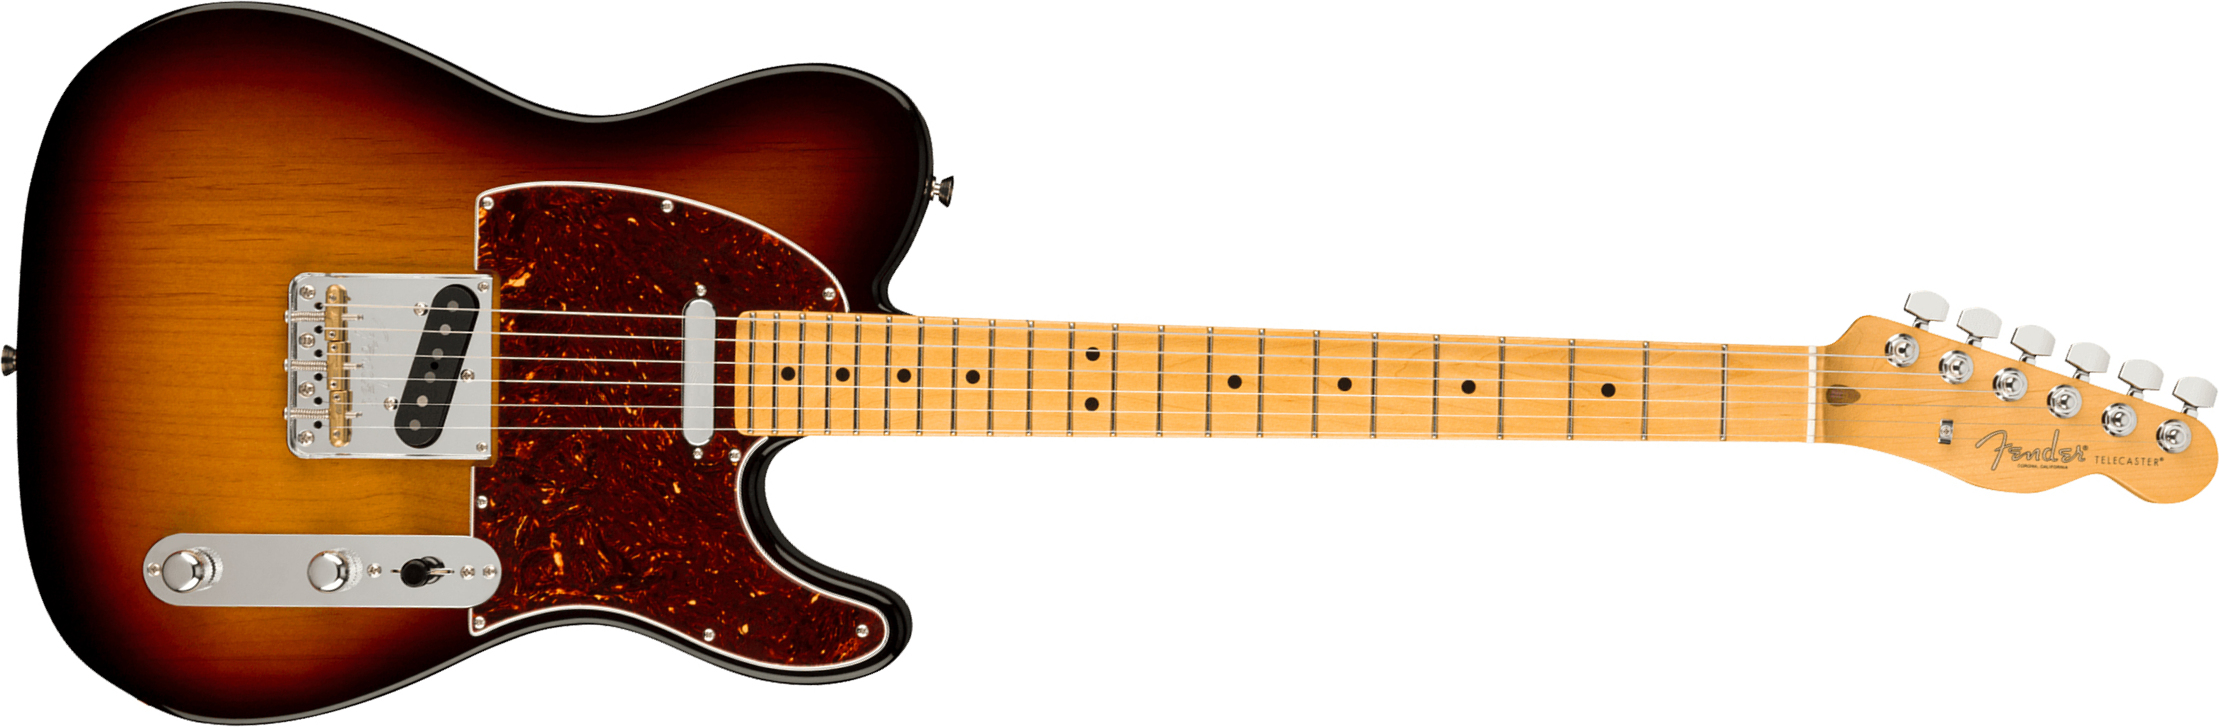 Fender Tele American Professional Ii Usa Mn - 3-color Sunburst - Guitarra eléctrica con forma de tel - Main picture